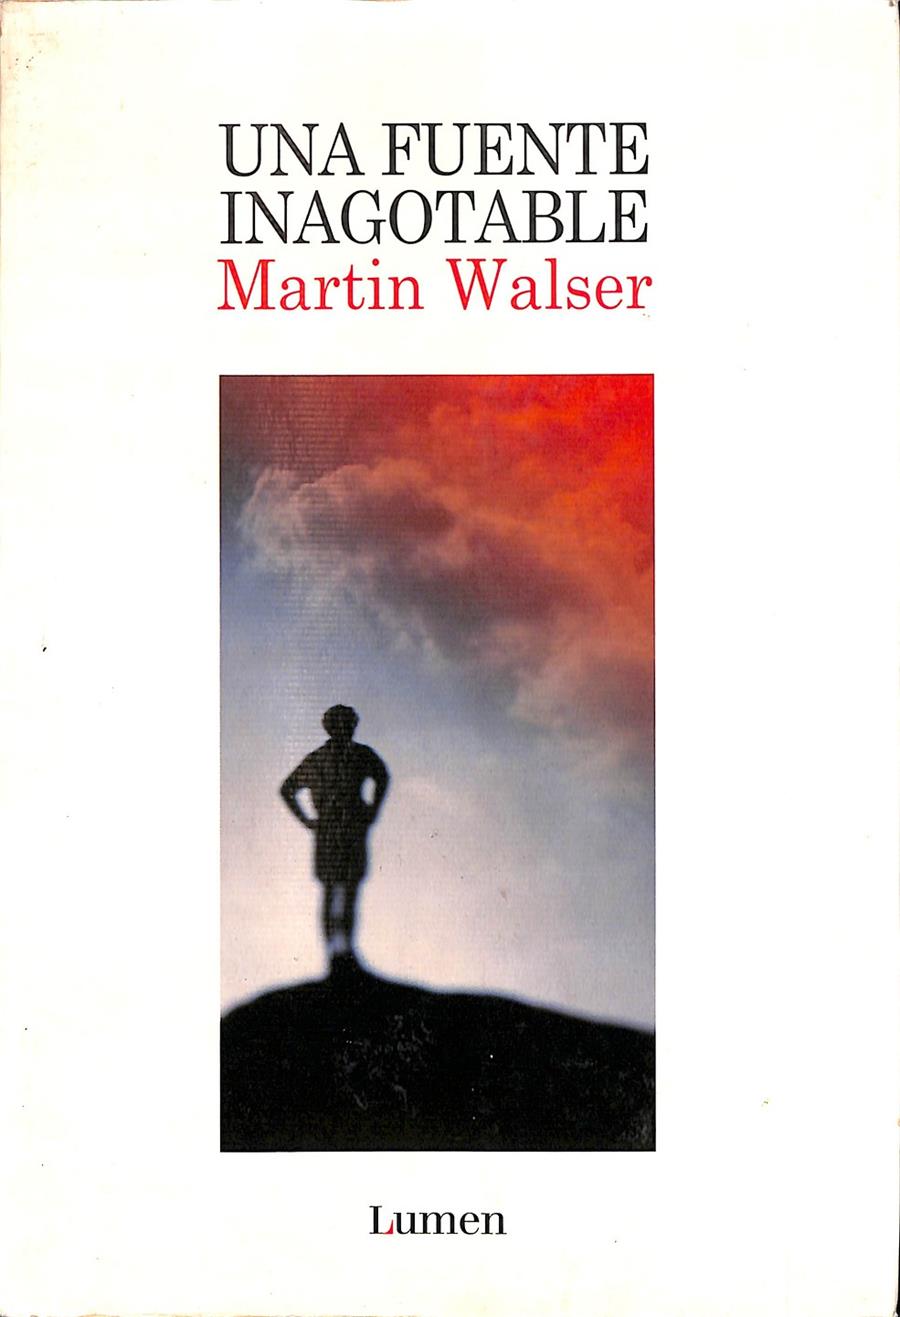 UNA FUENTE INAGOTABLE | MARTIN WALSER